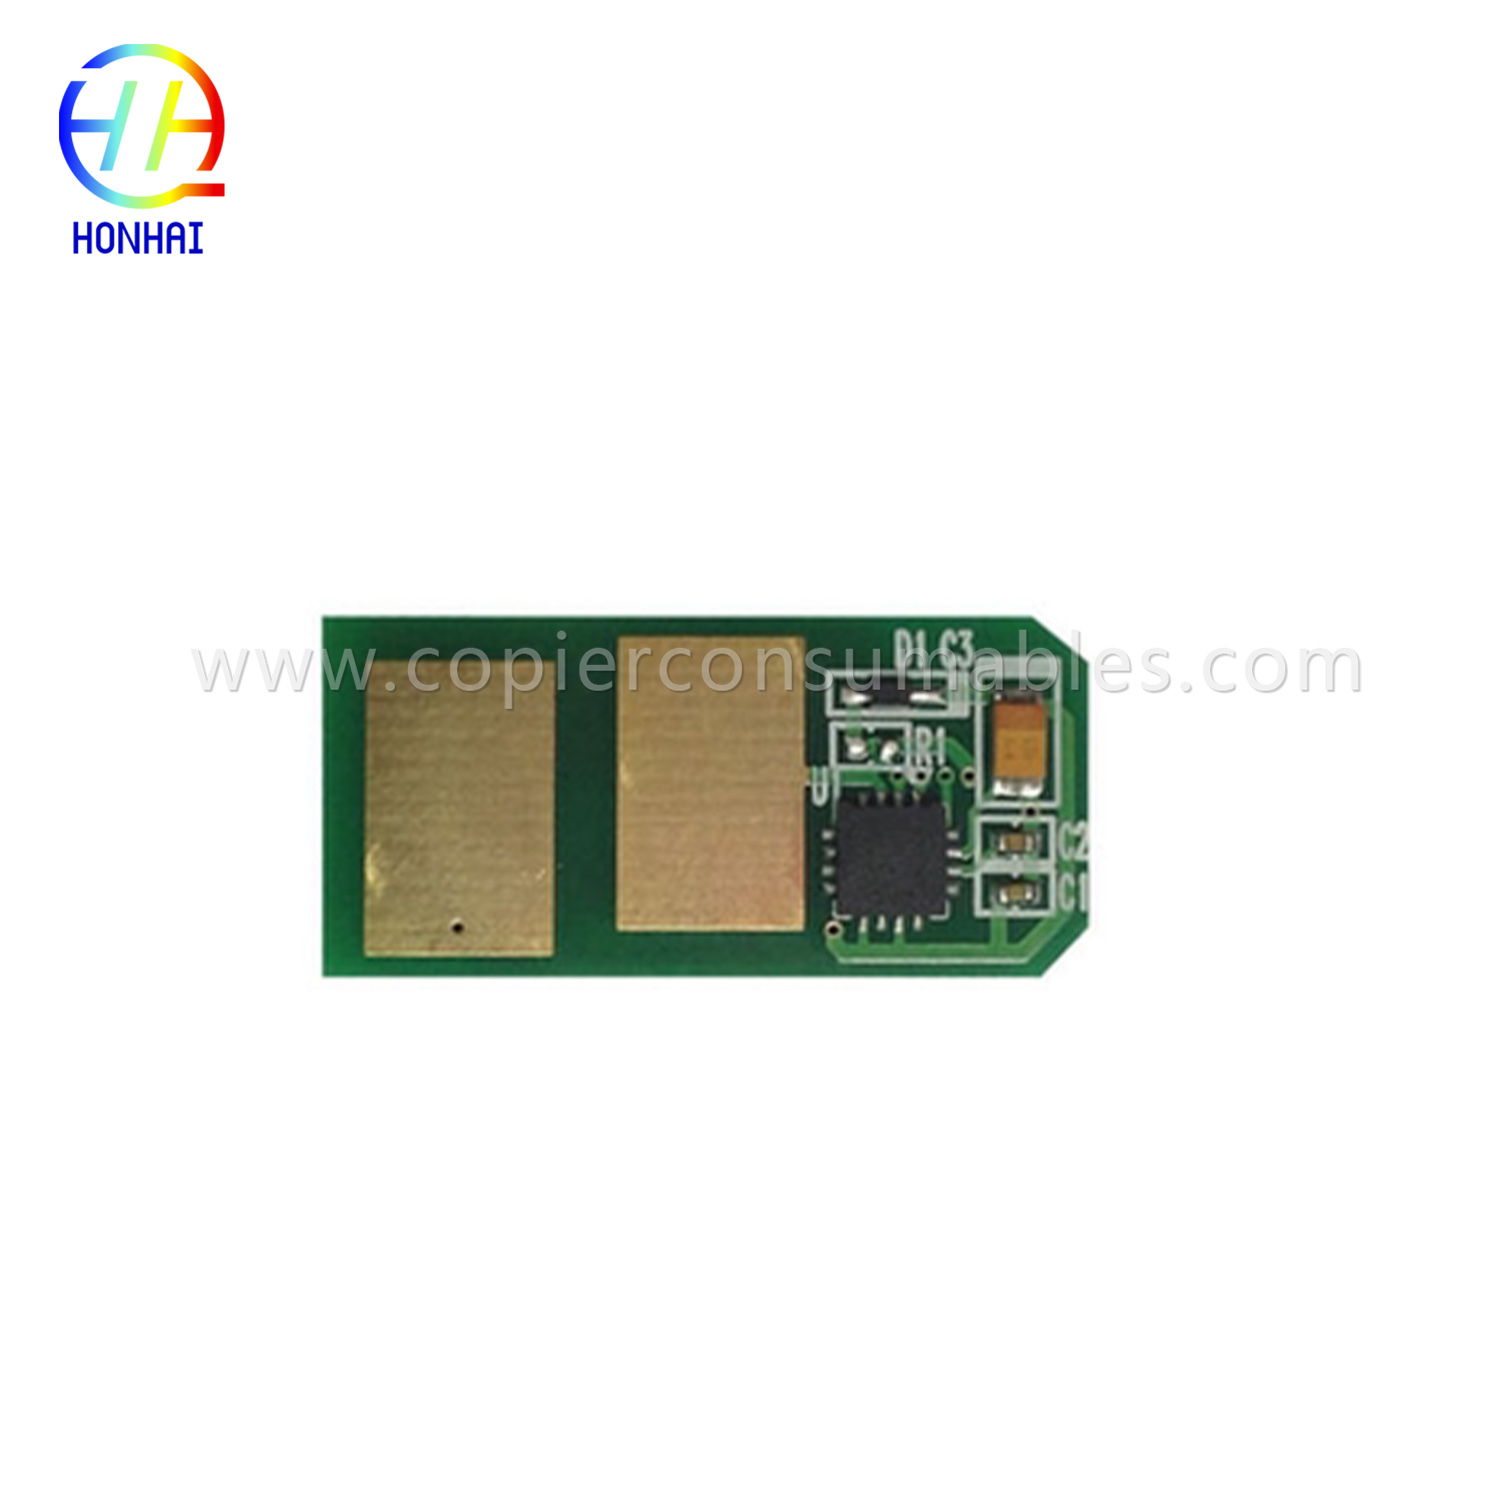 Toner cartridge Chip for Oki C301 C321 1.5K 拷贝